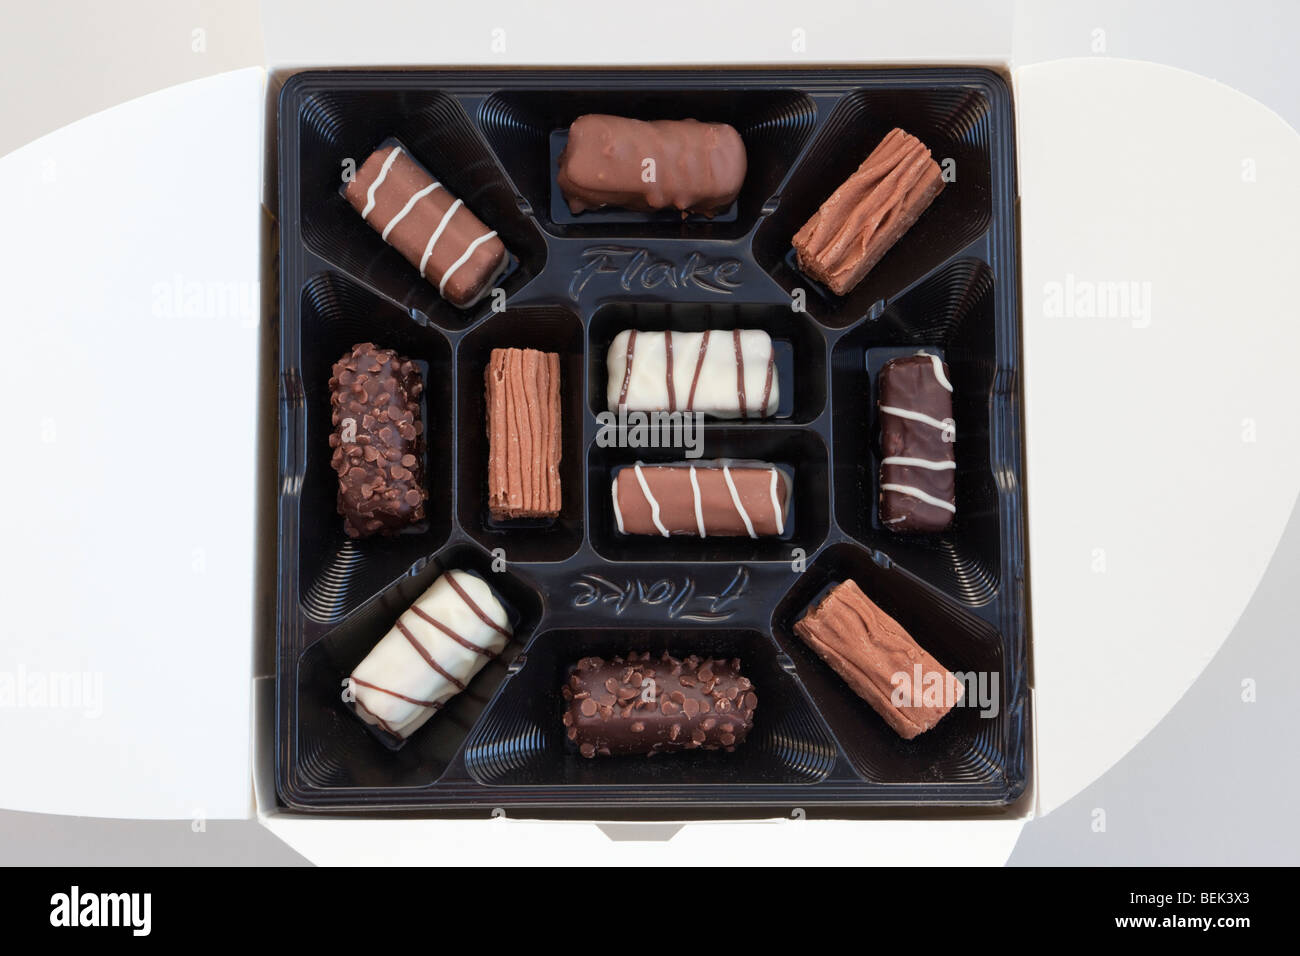 Parte superiore verso il basso di una scatola di Cadburys Flake cioccolatini stampata in plastica di imballaggio a partire da sopra. Cioccolato fondente, al latte e bianco selezione. Inghilterra Regno Unito Gran Bretagna Foto Stock